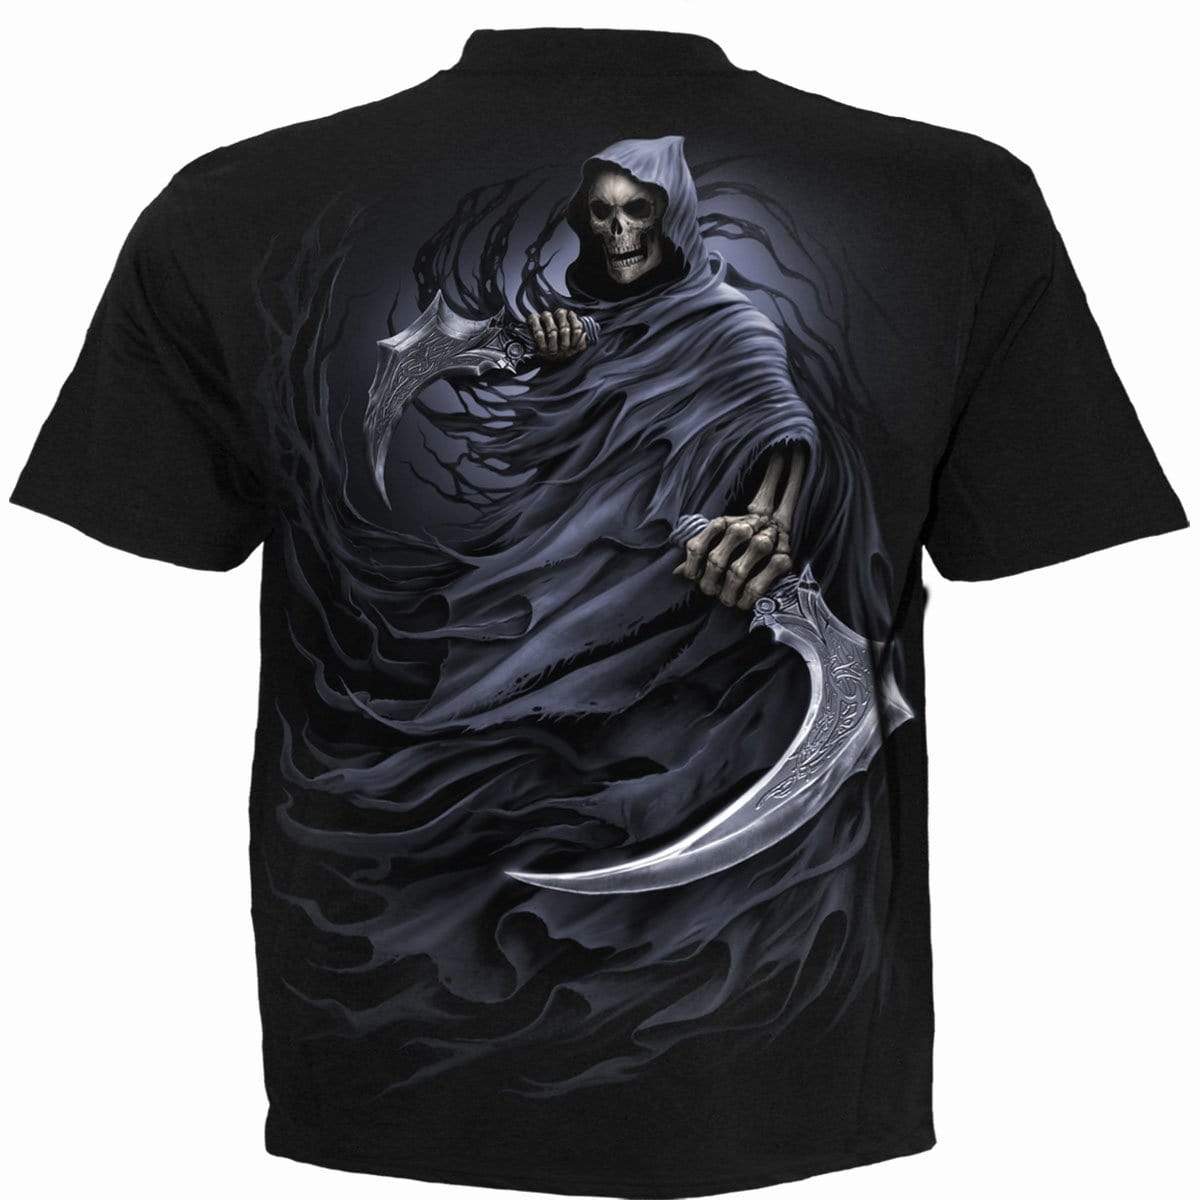 DUBBELE DEATH - T-shirt zwart